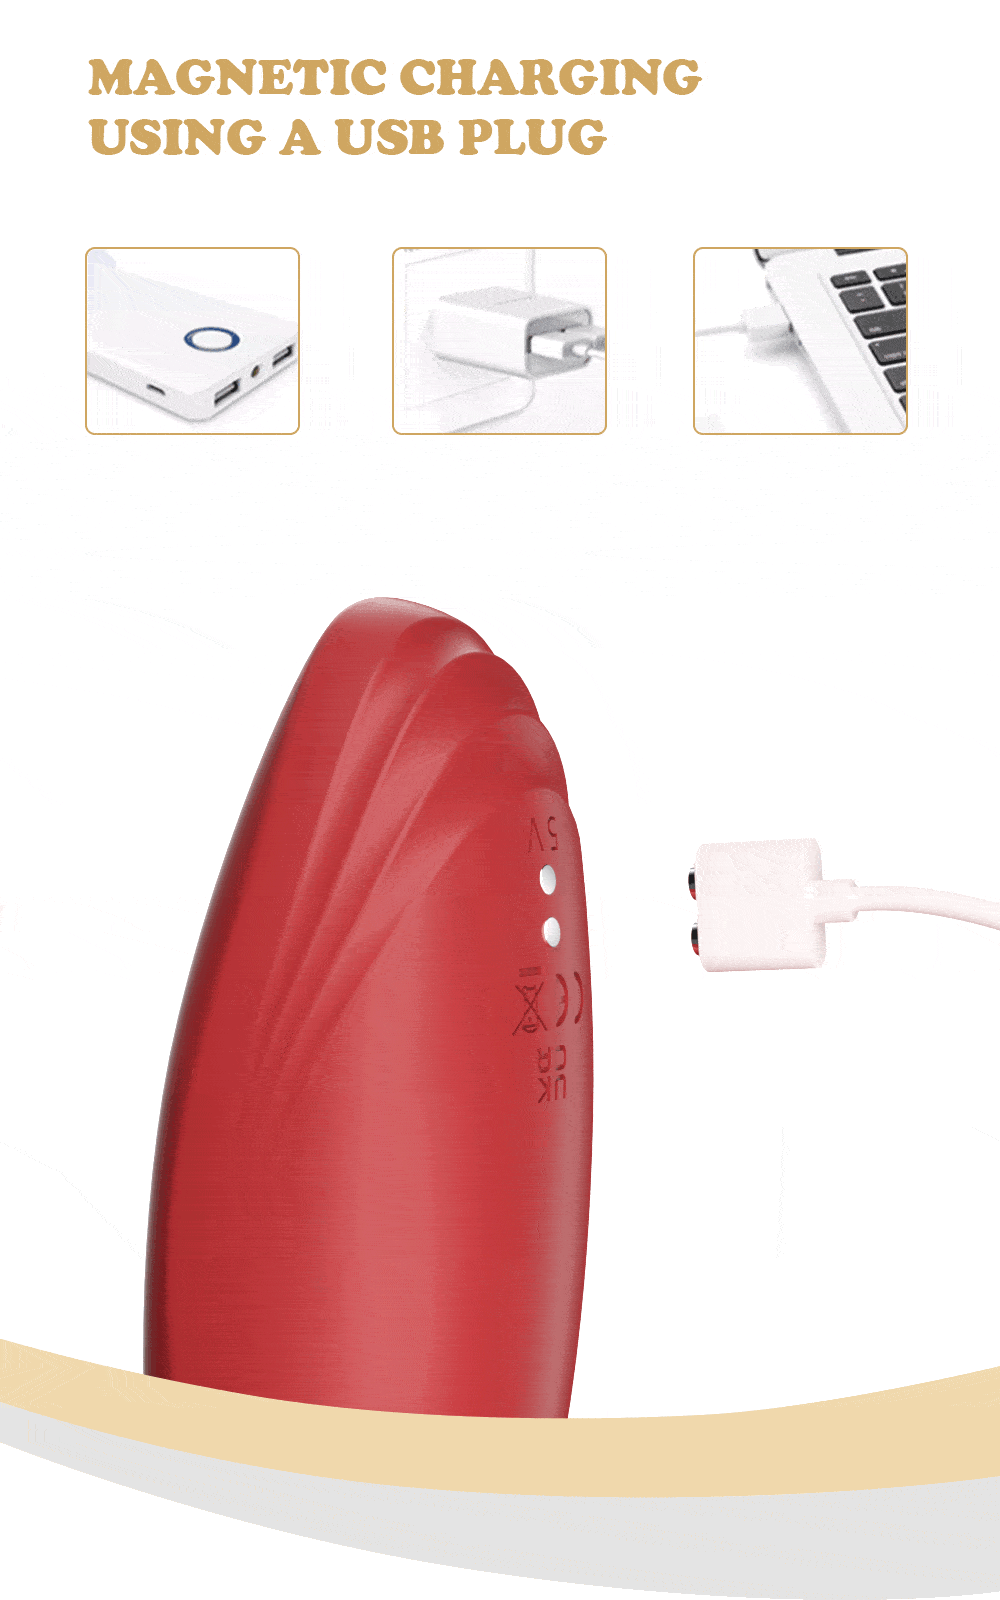 vibrador para lamer la lengua carga magnética mediante un enchufe usb